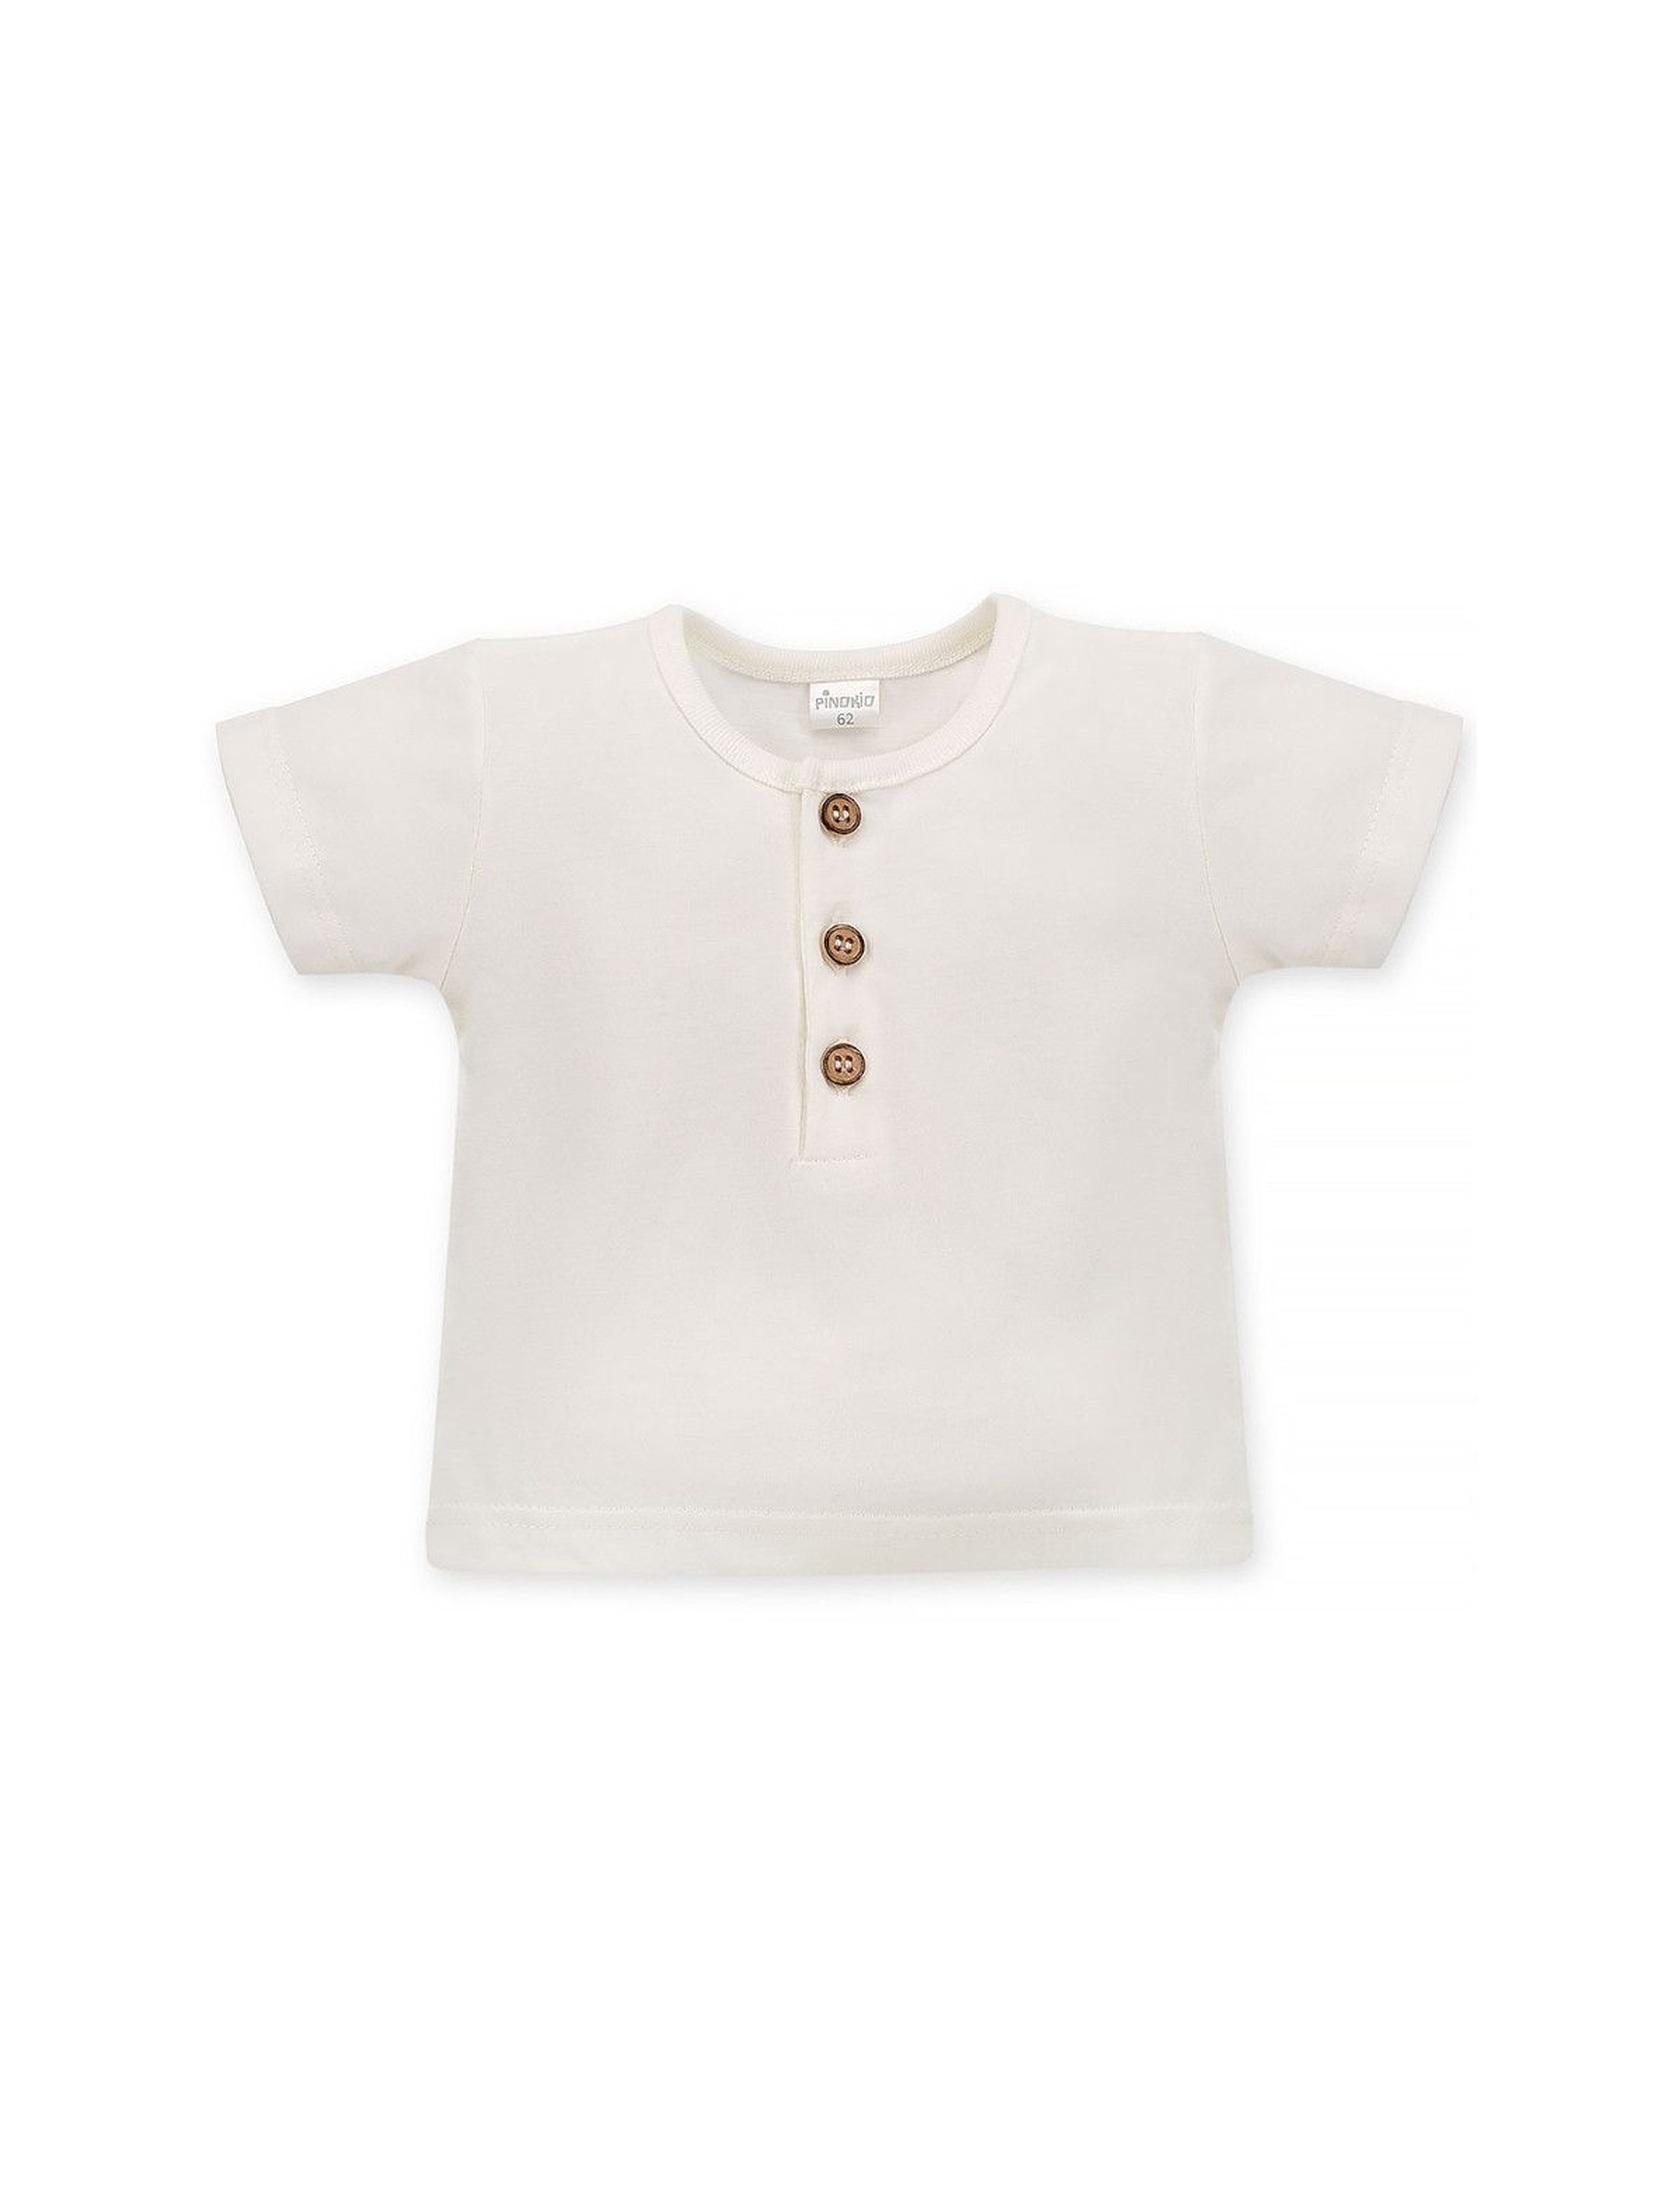 Bawełniana bluzka niemowlęca ecru